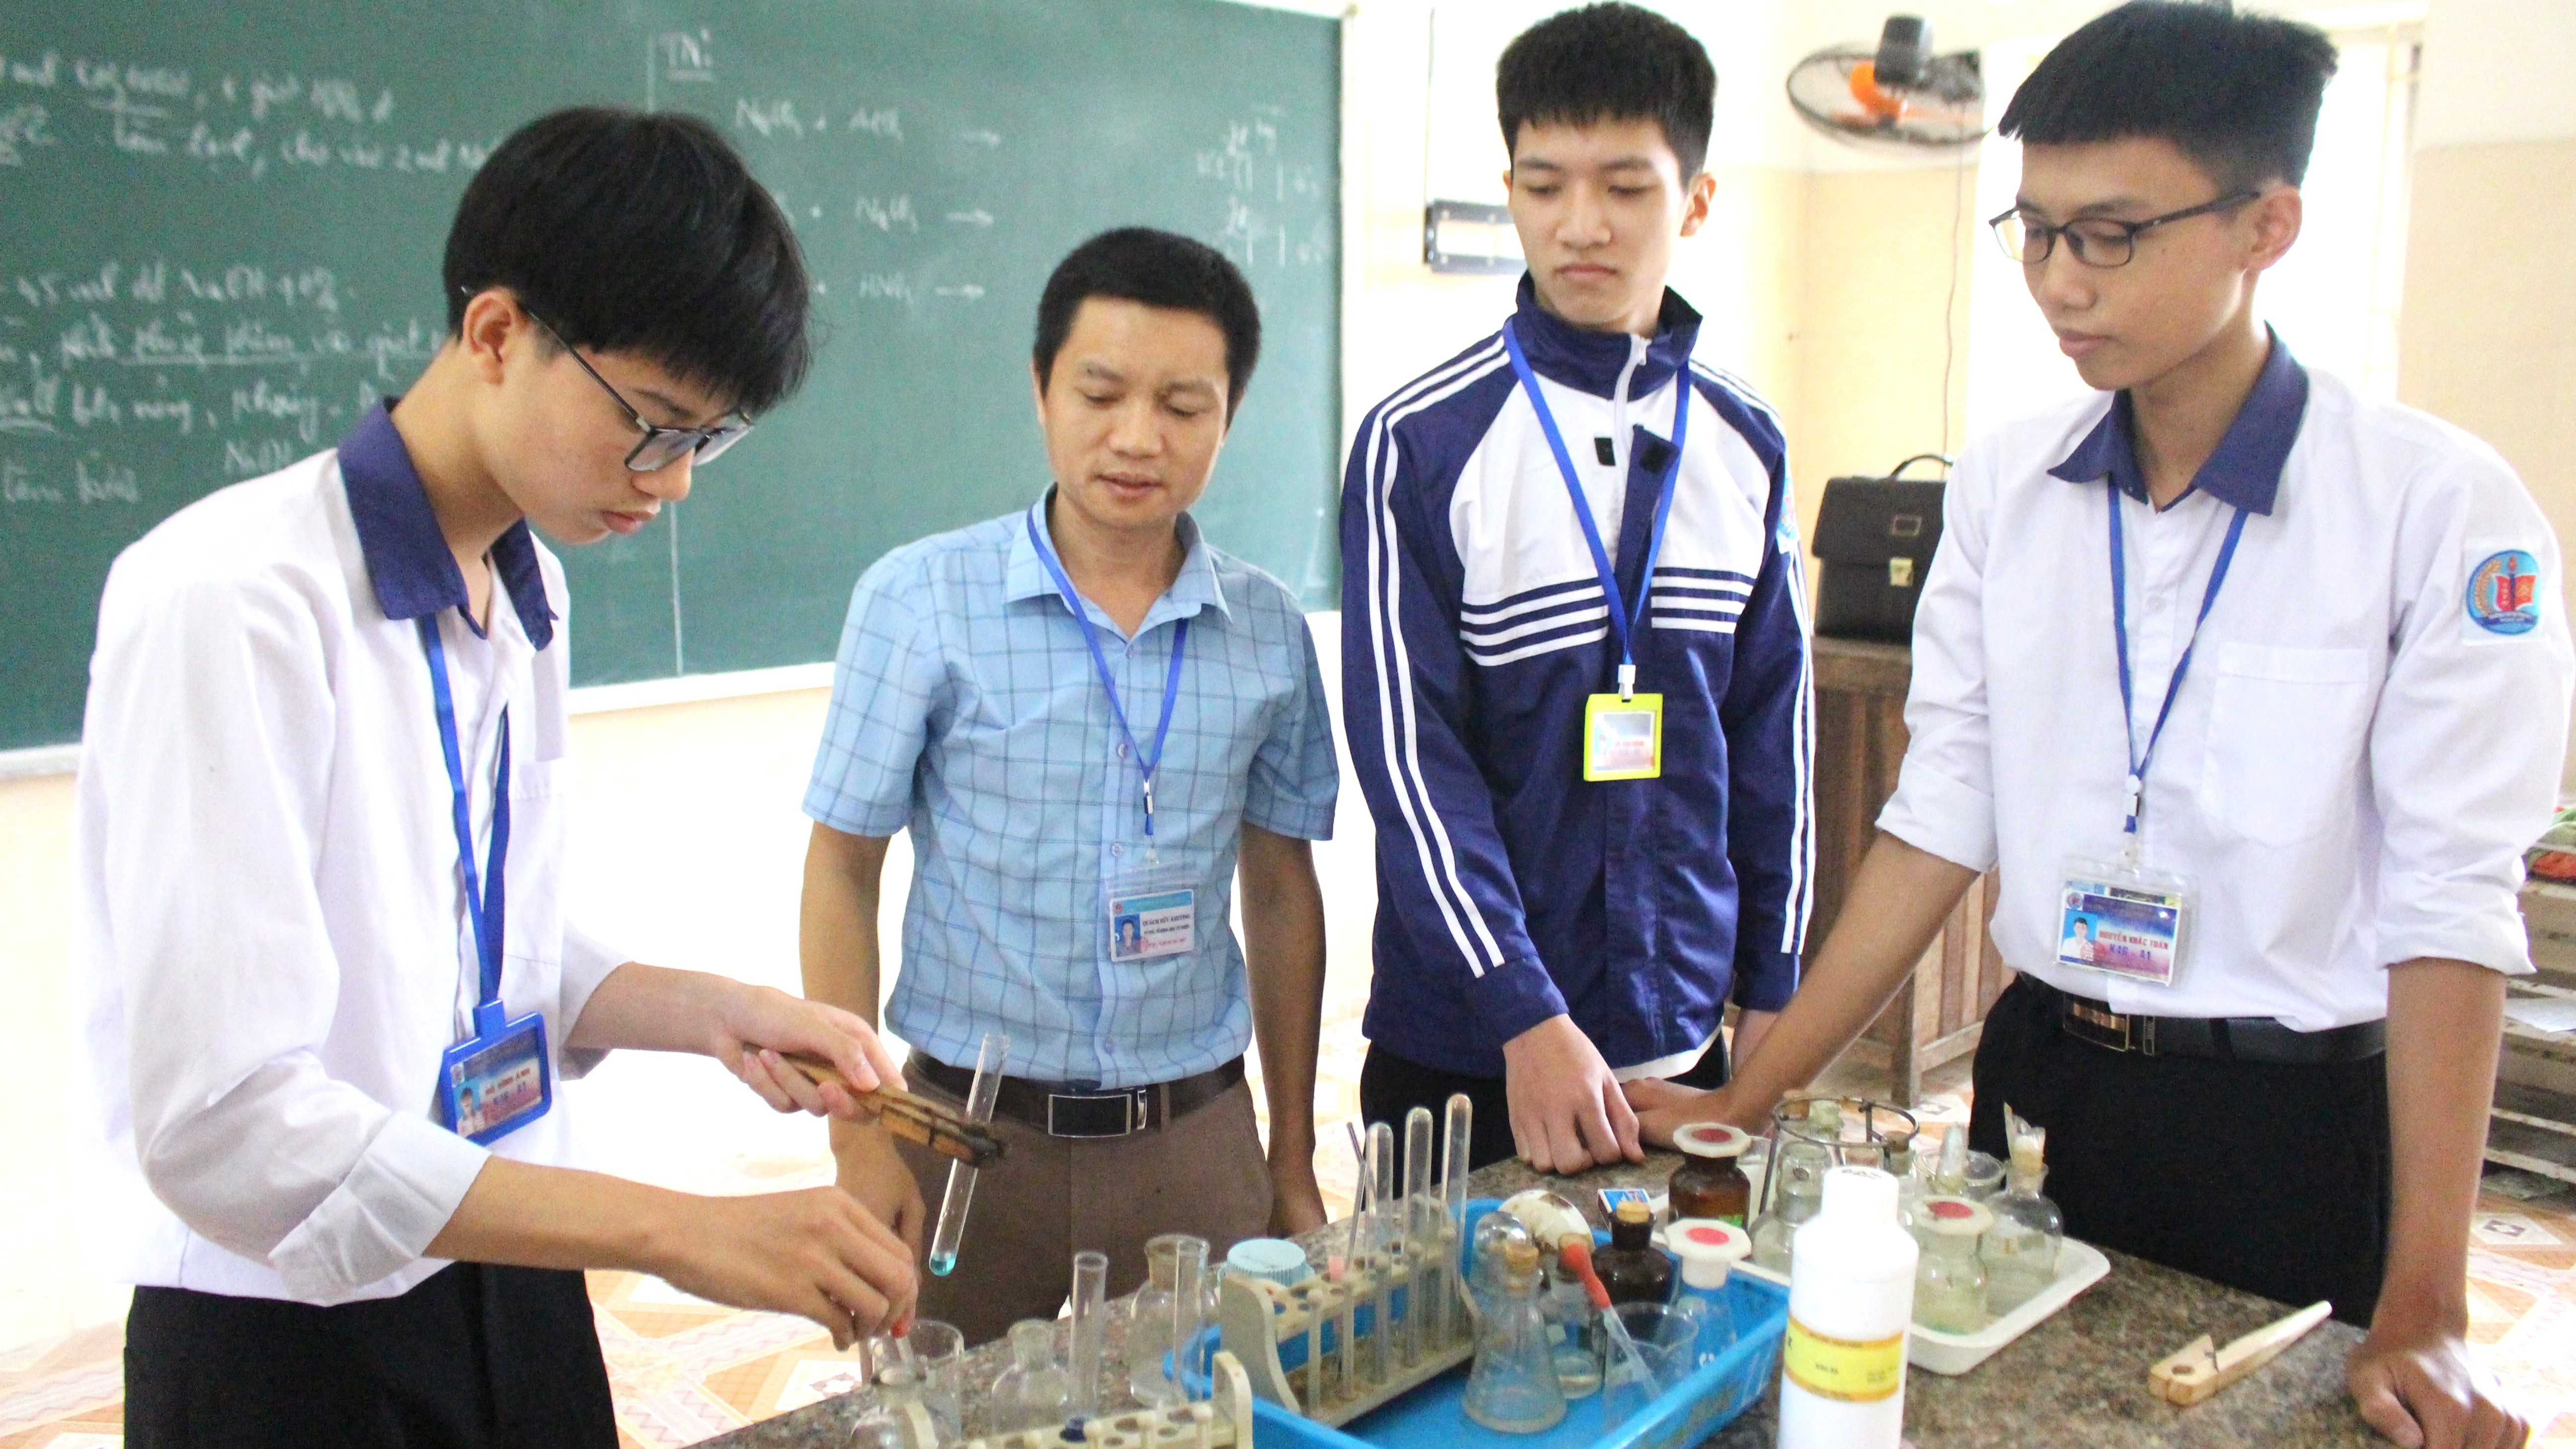 bna_Ánh và một số bạn trong đội tuyển bồi dưỡng học sinh giỏi được thầy giáo Quách Hữu Khương (áo xanh kẻ) hướng dẫn thực hành thí nghiệm.JPG